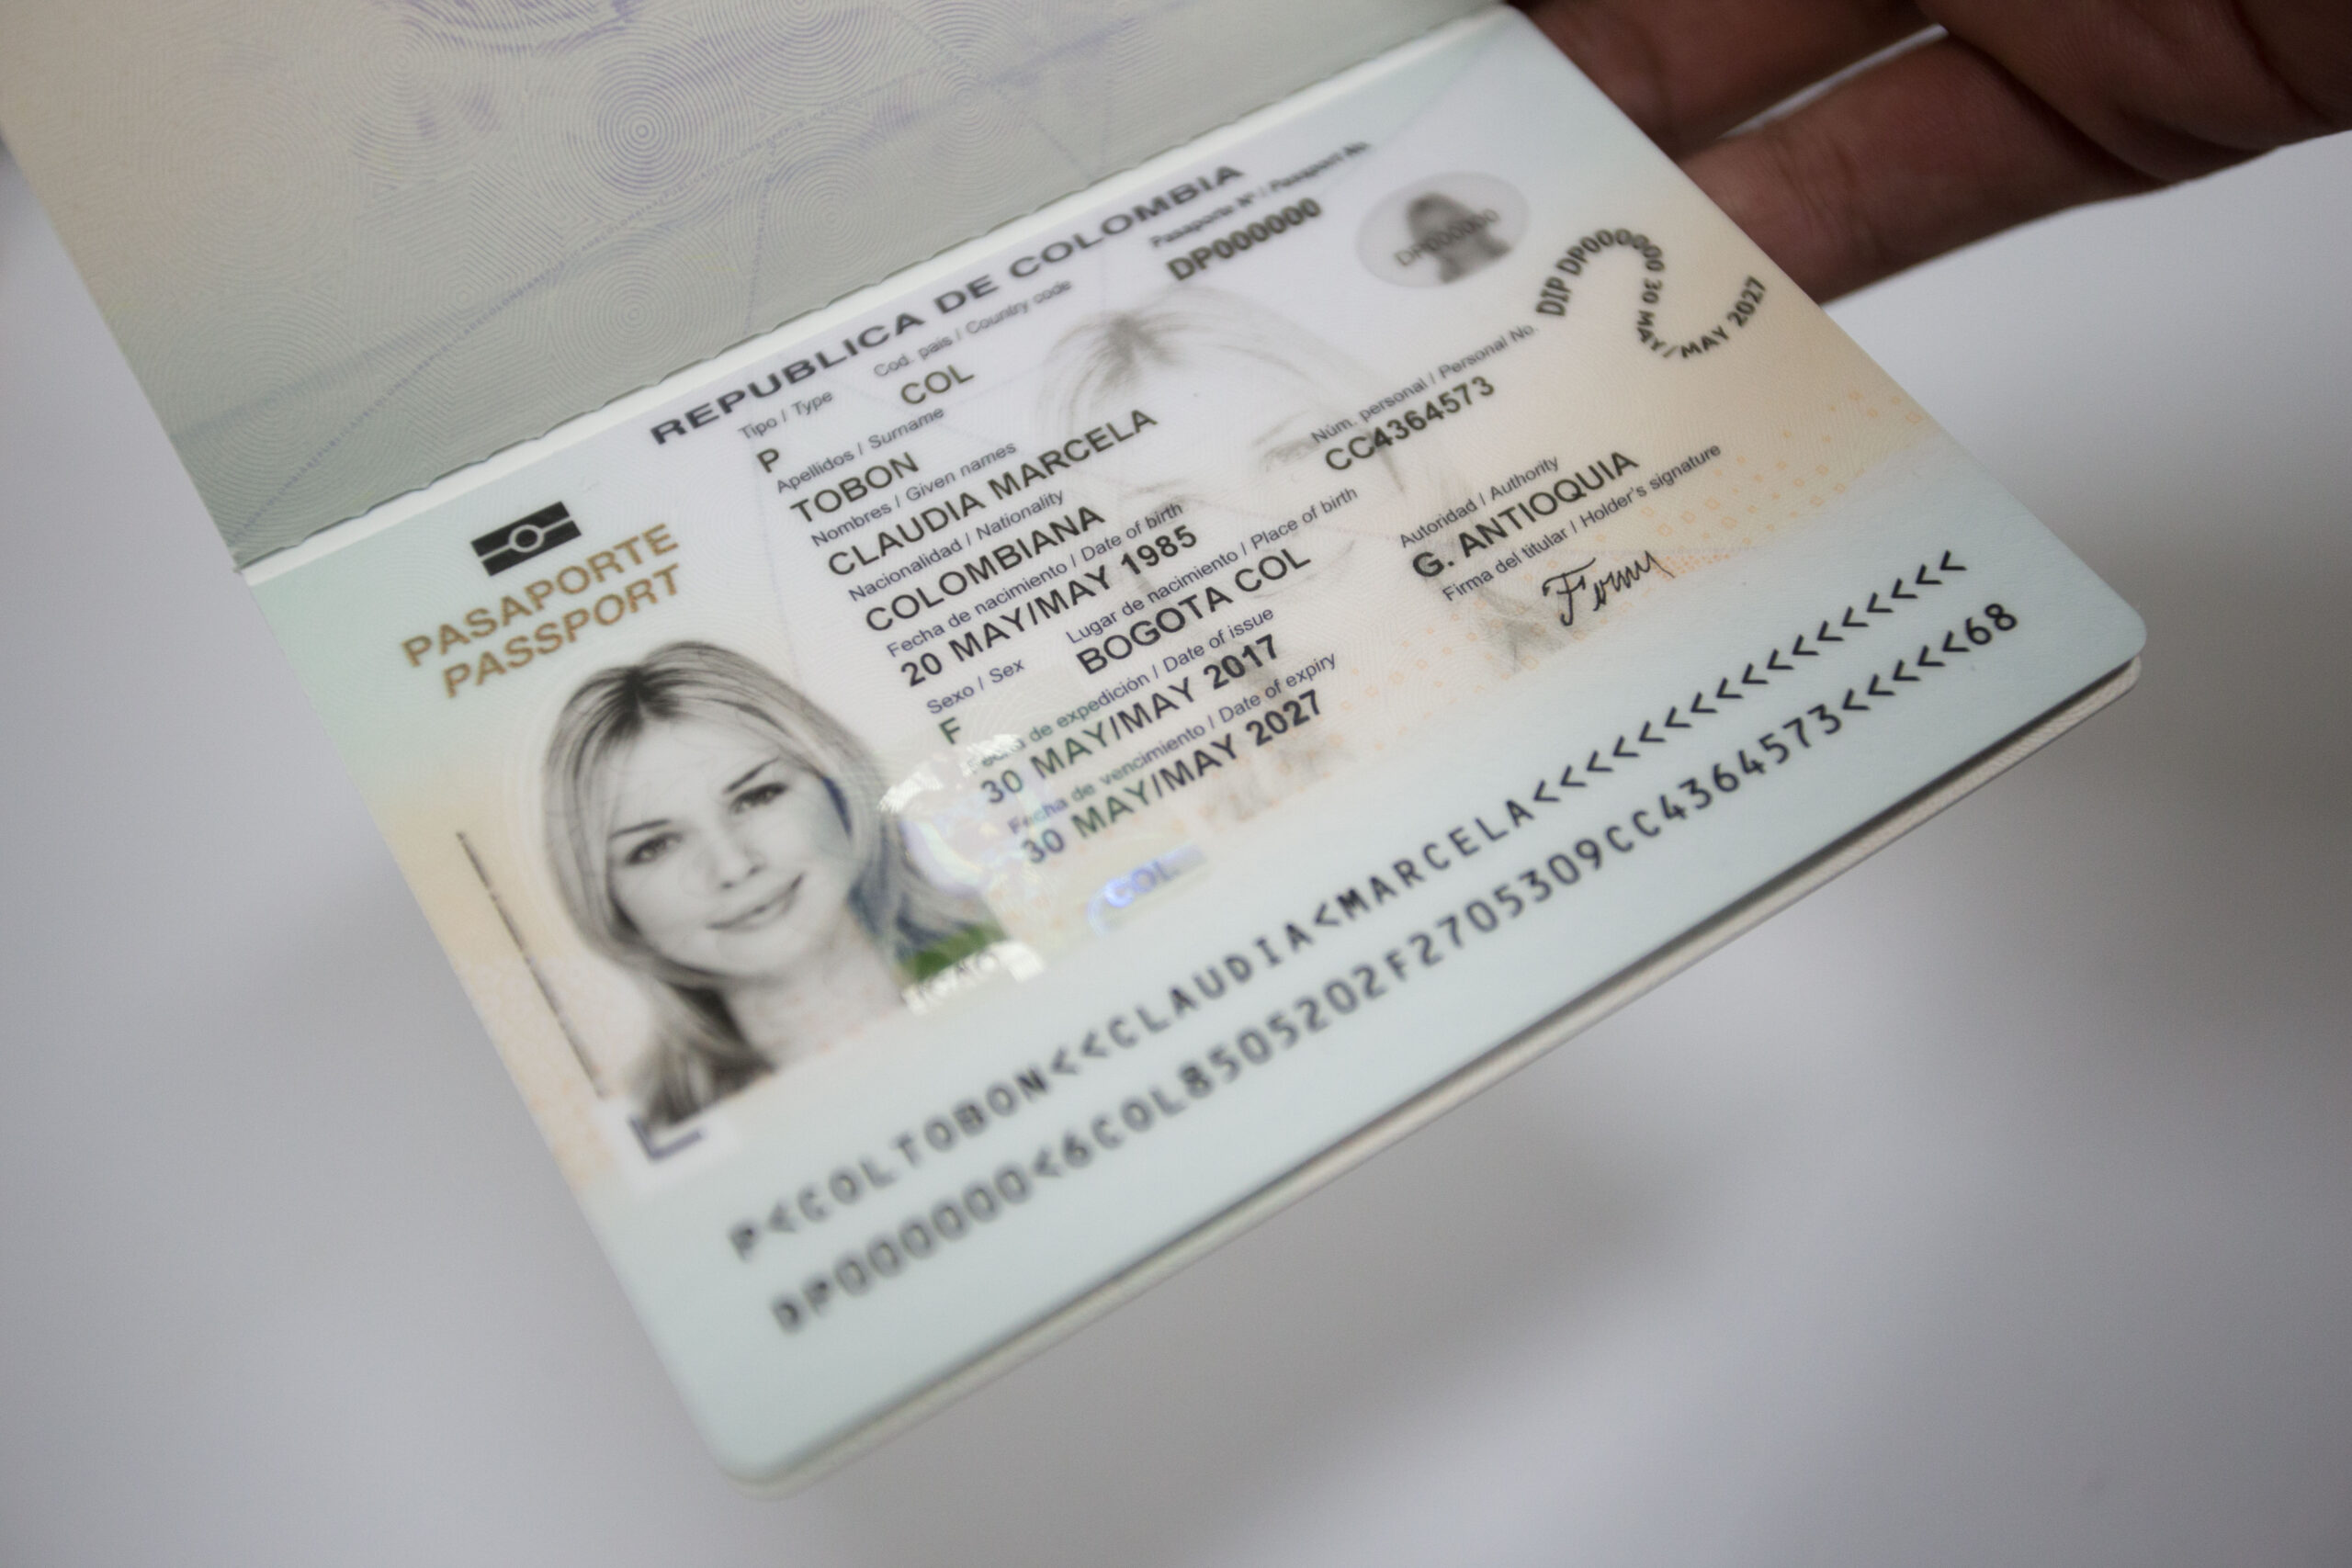 Apuntes sueltos, Pico & Cédula para el pasaporte